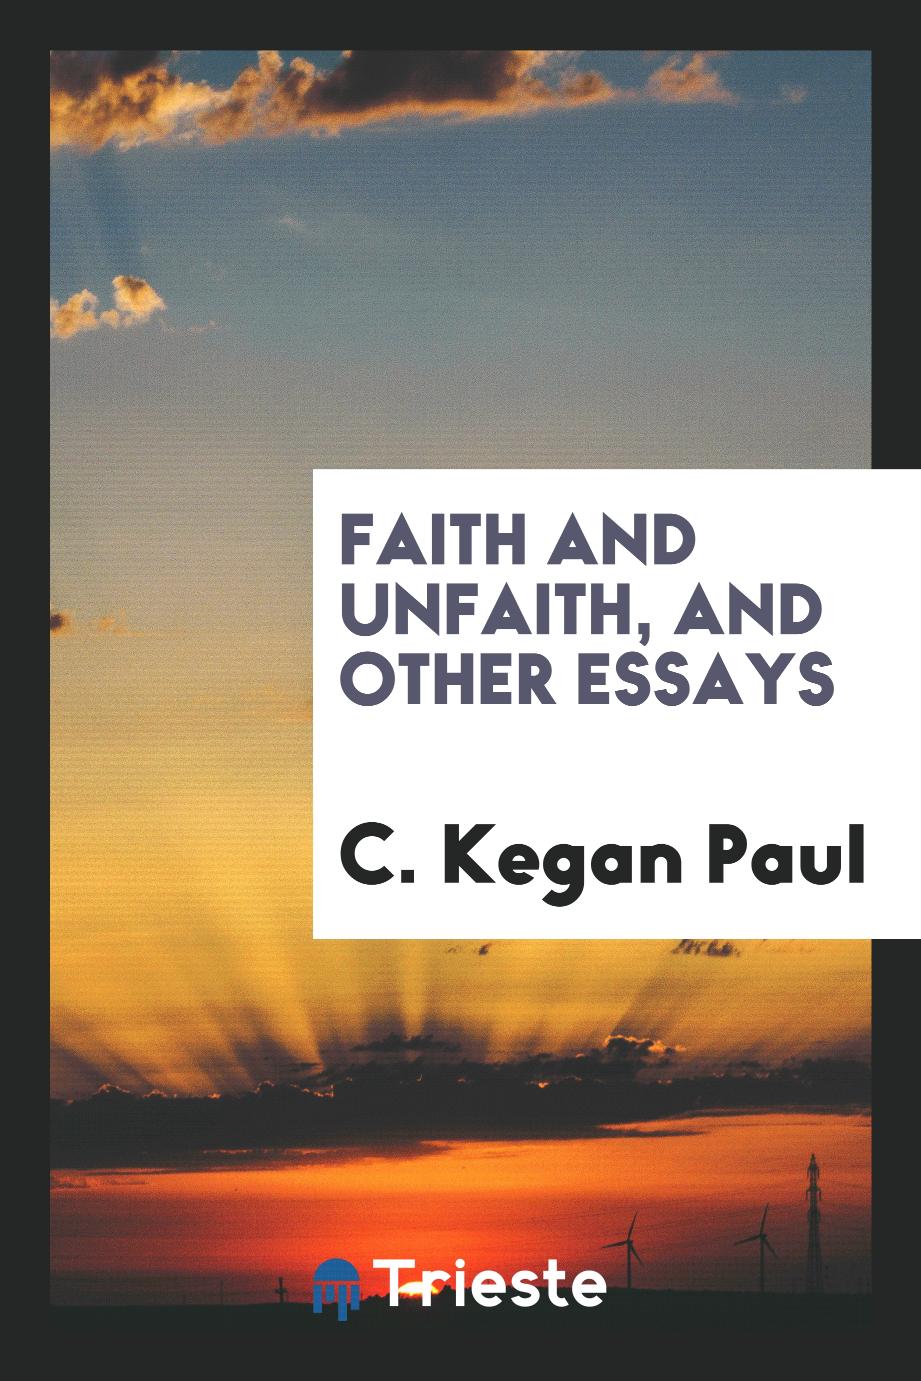 Faith and unfaith, and other essays